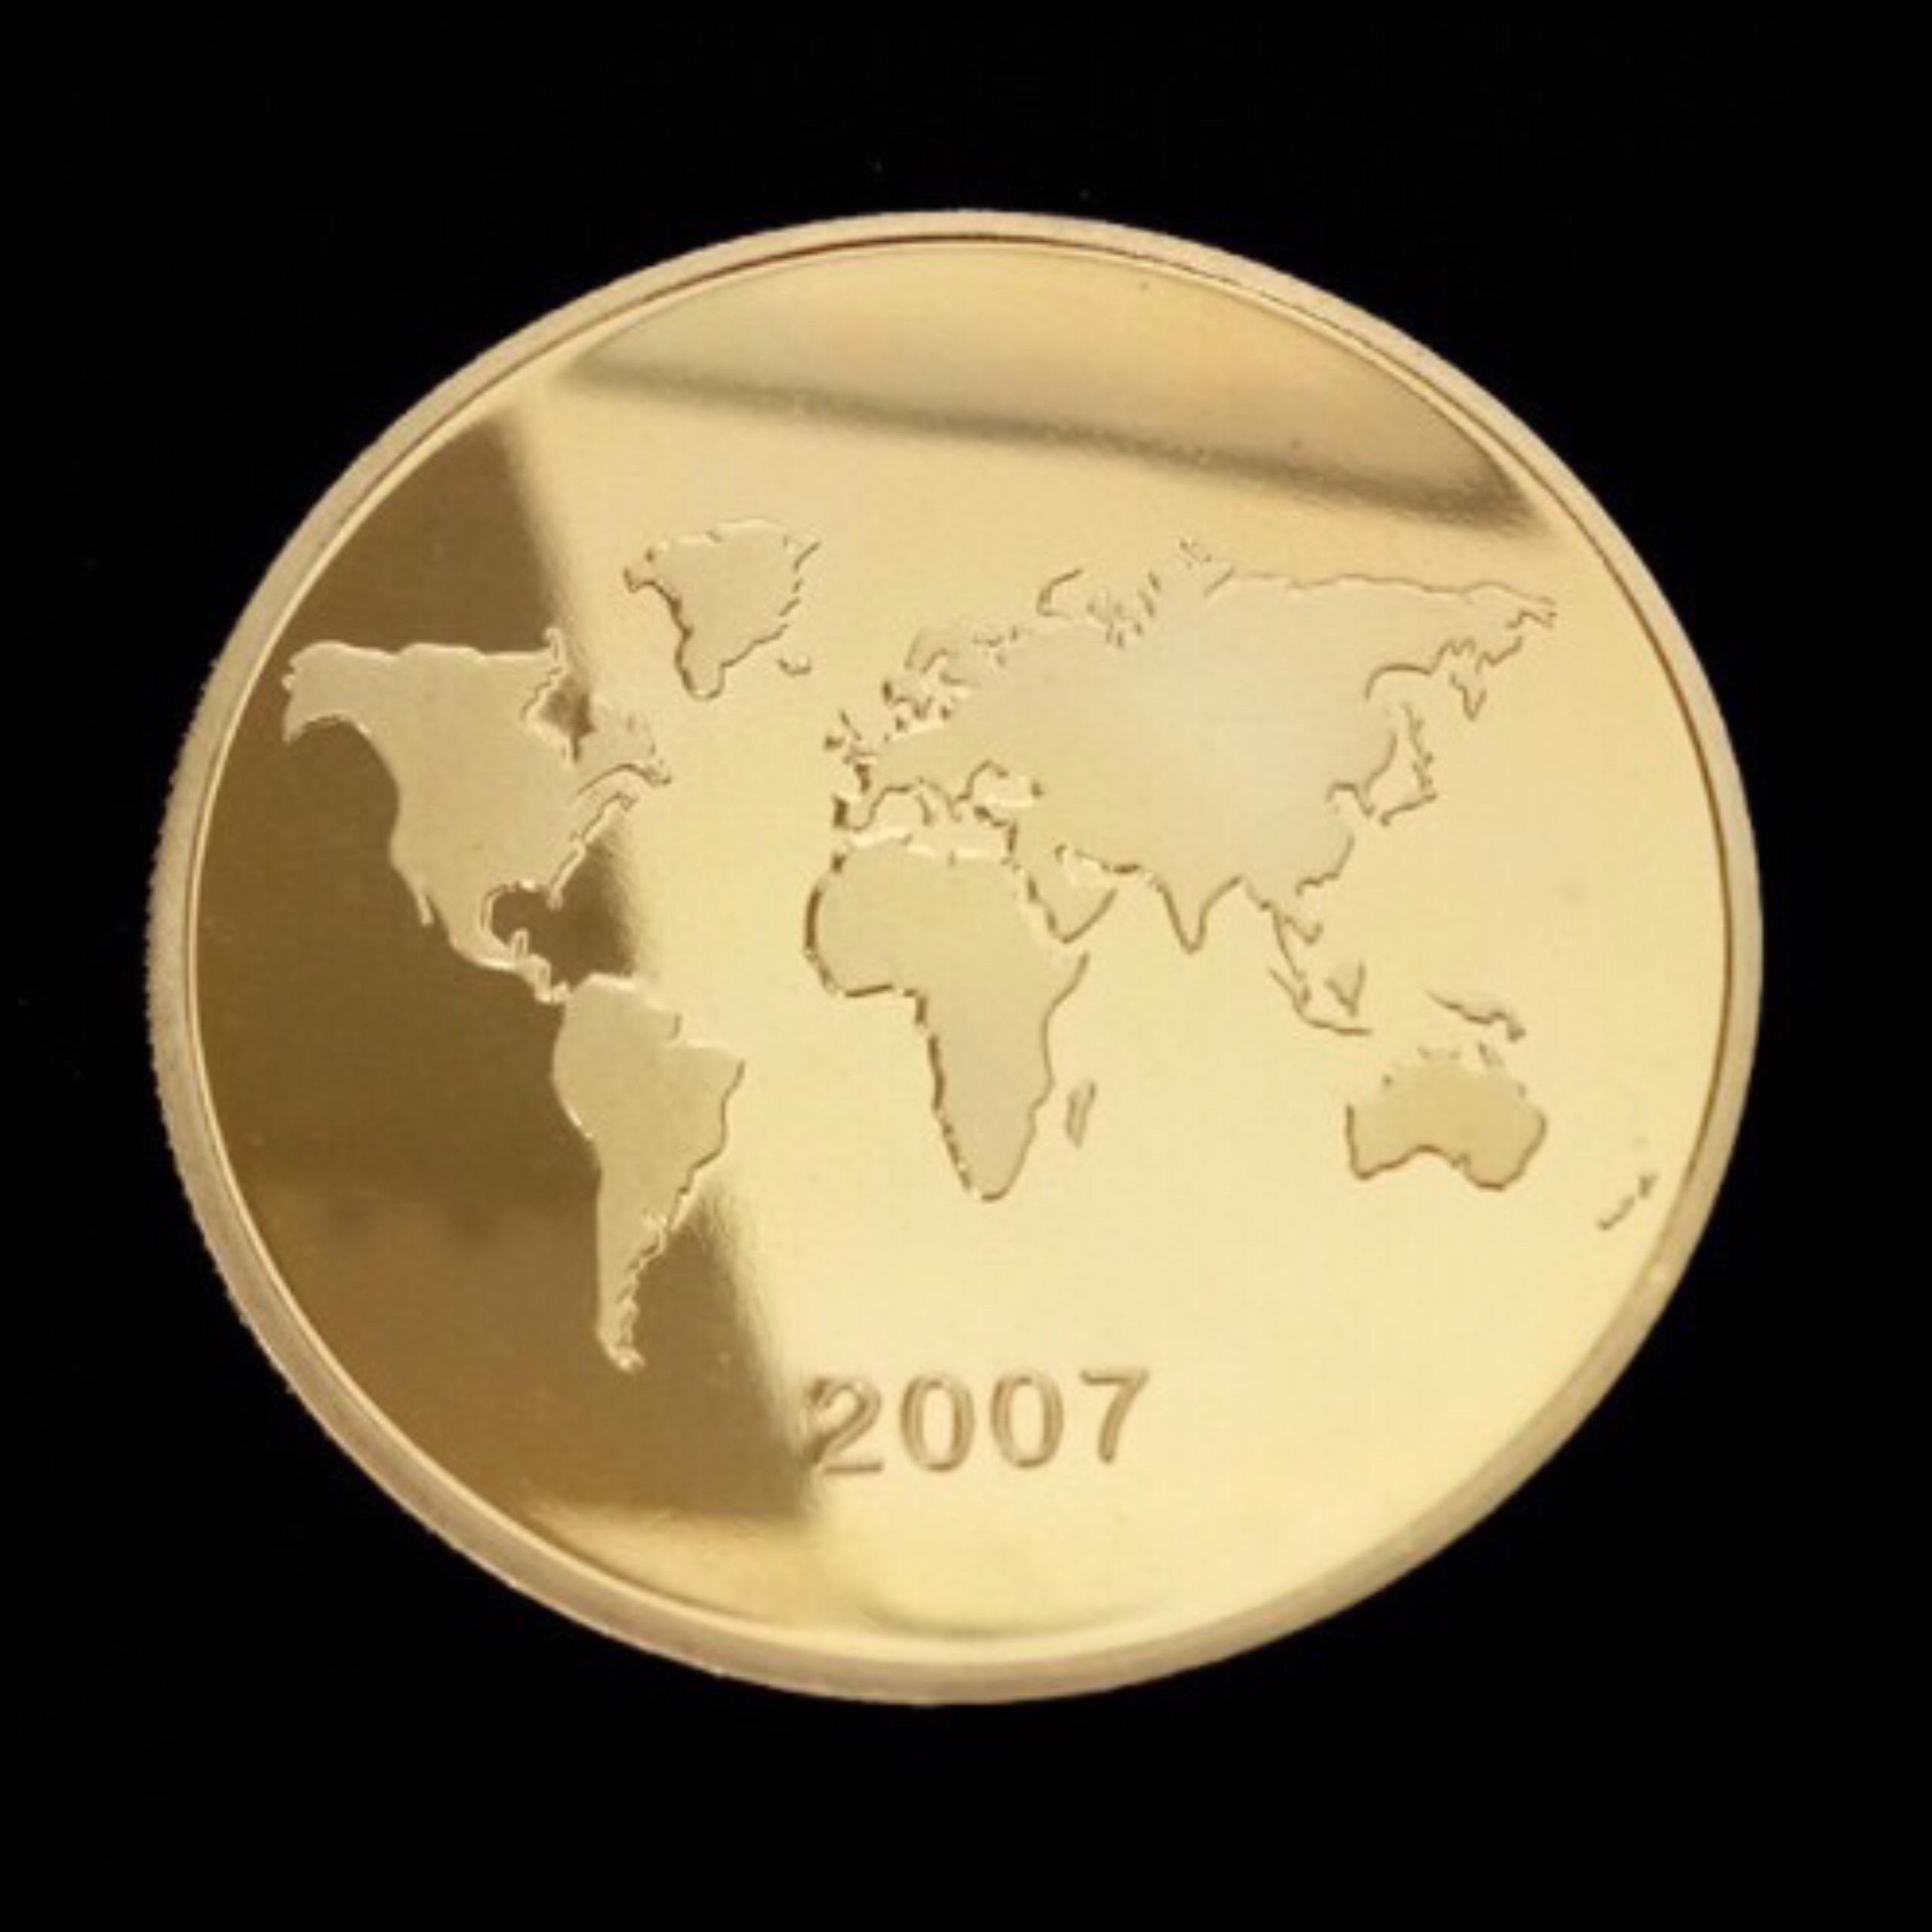 Xu mạ vàng in tượng Chúa Kitô Cứu Thế - BRAZIL, được công nhận là 1 trong 7 kỳ quan thế giới 2007, kèm hộp đựng